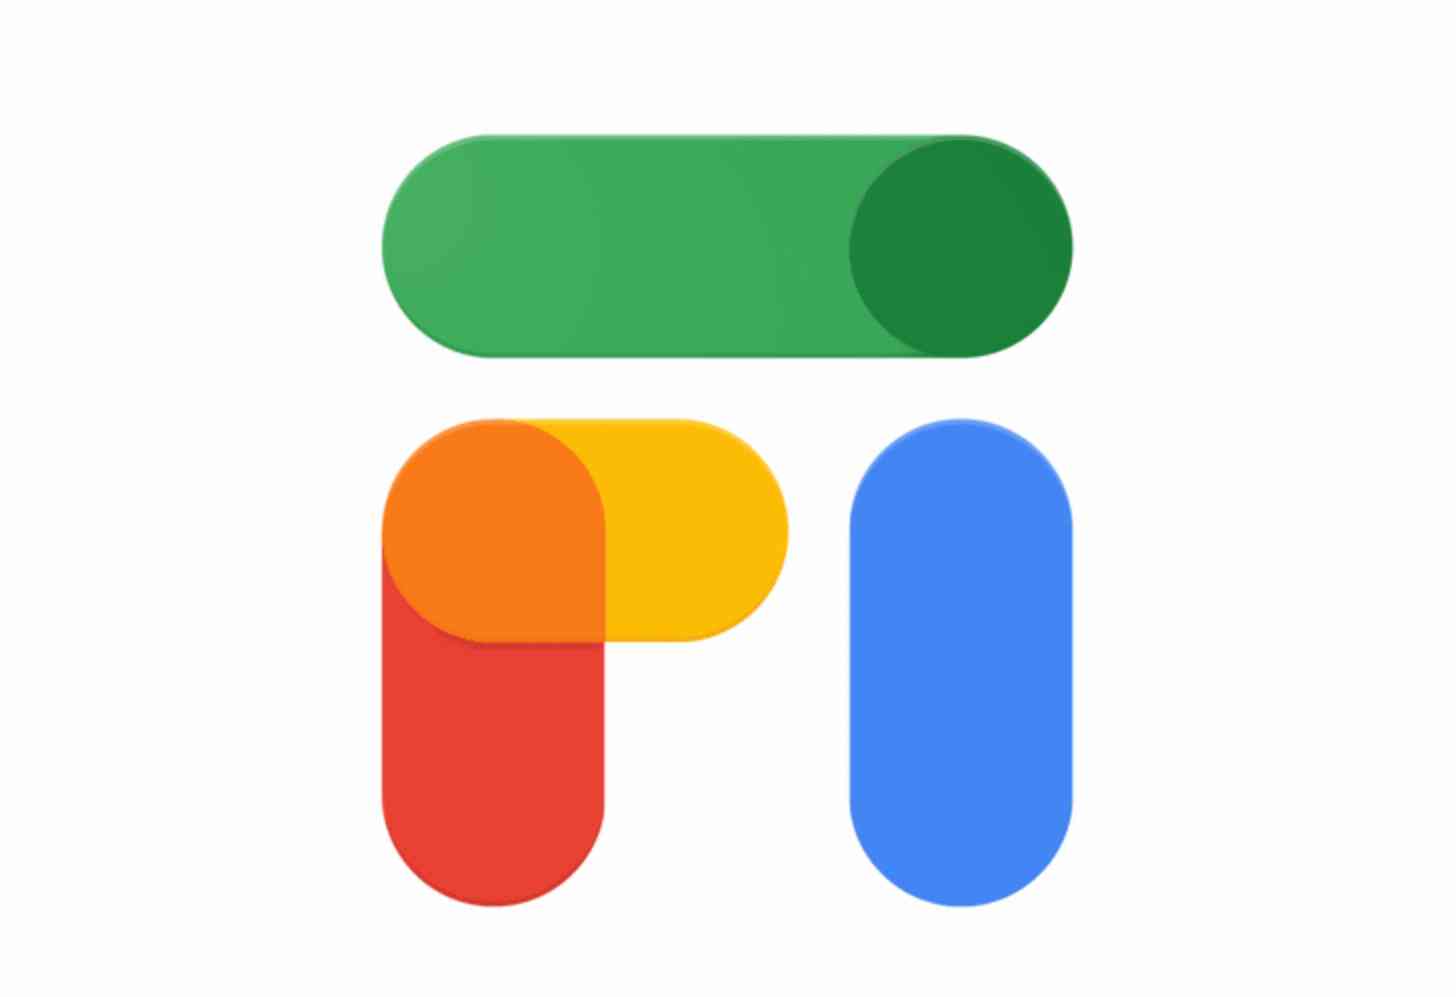 Google Fi logo